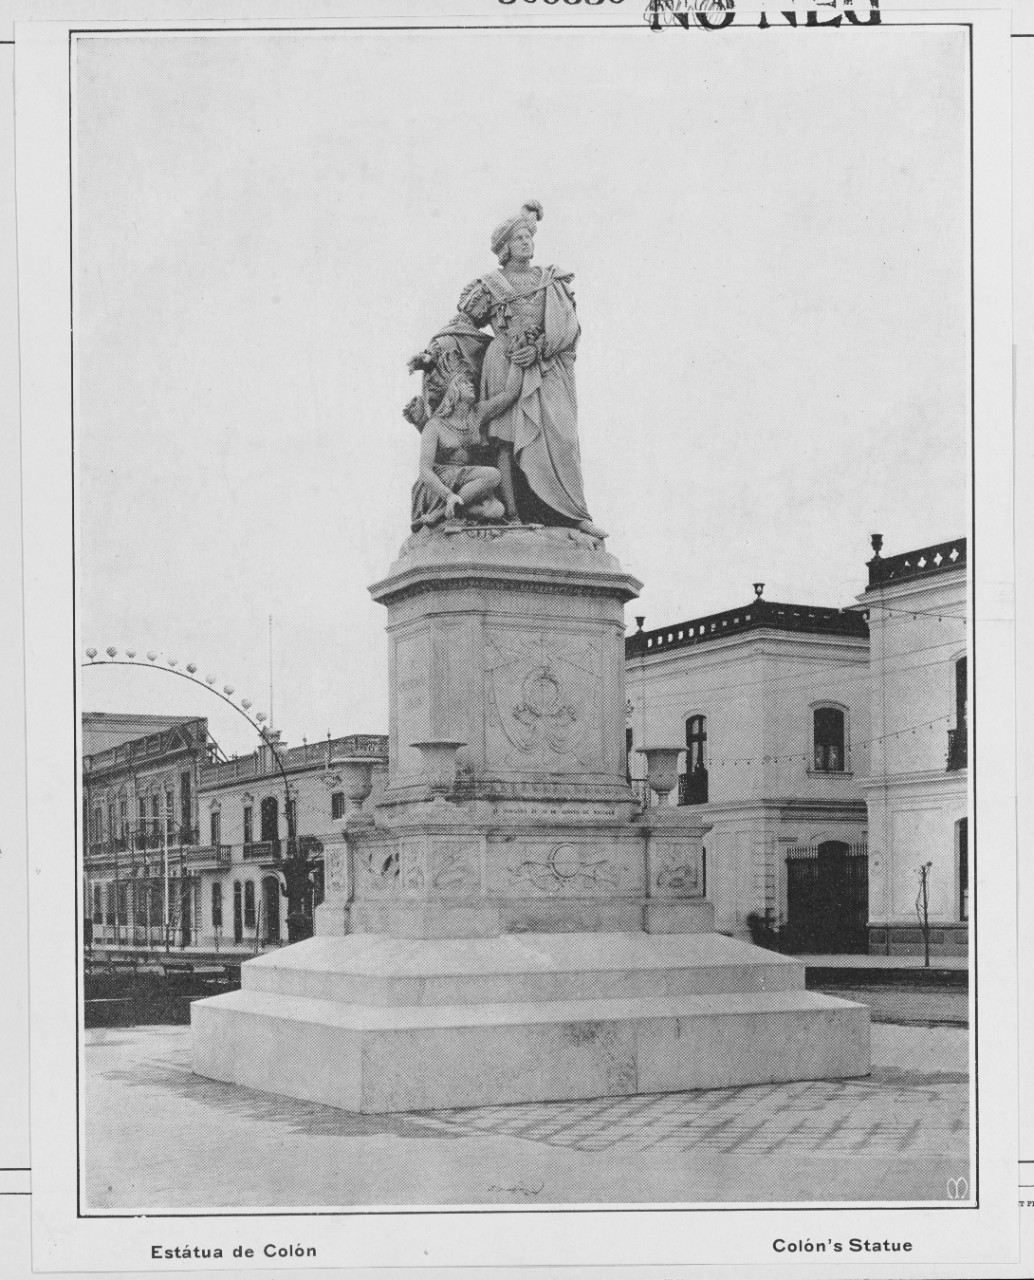 Colon's Statue